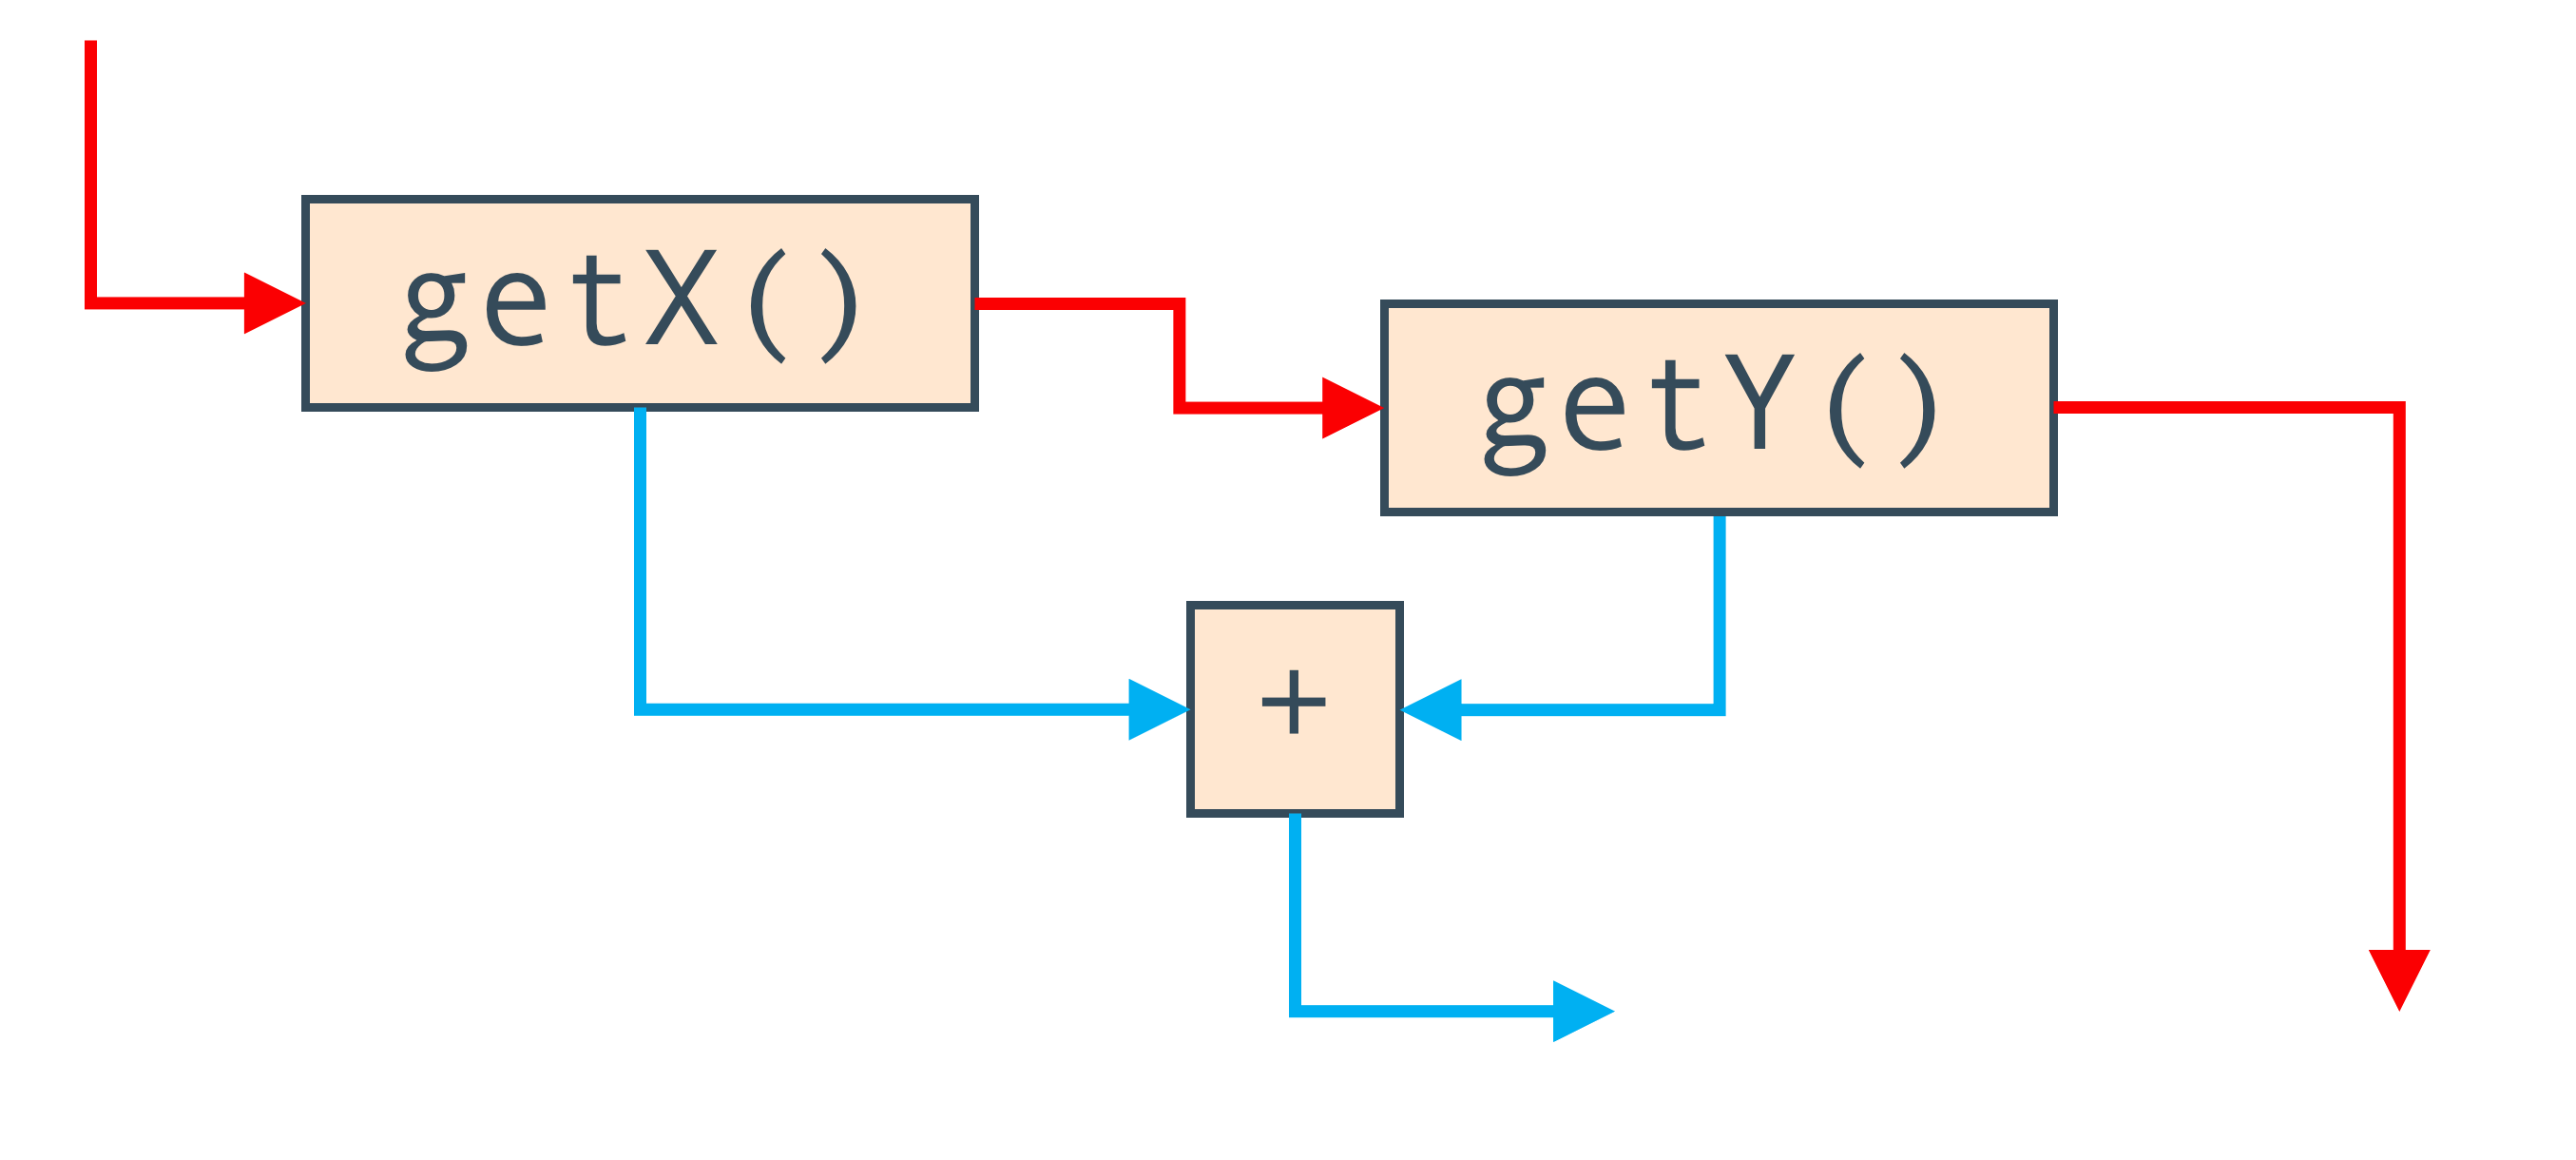 Control-flow graph